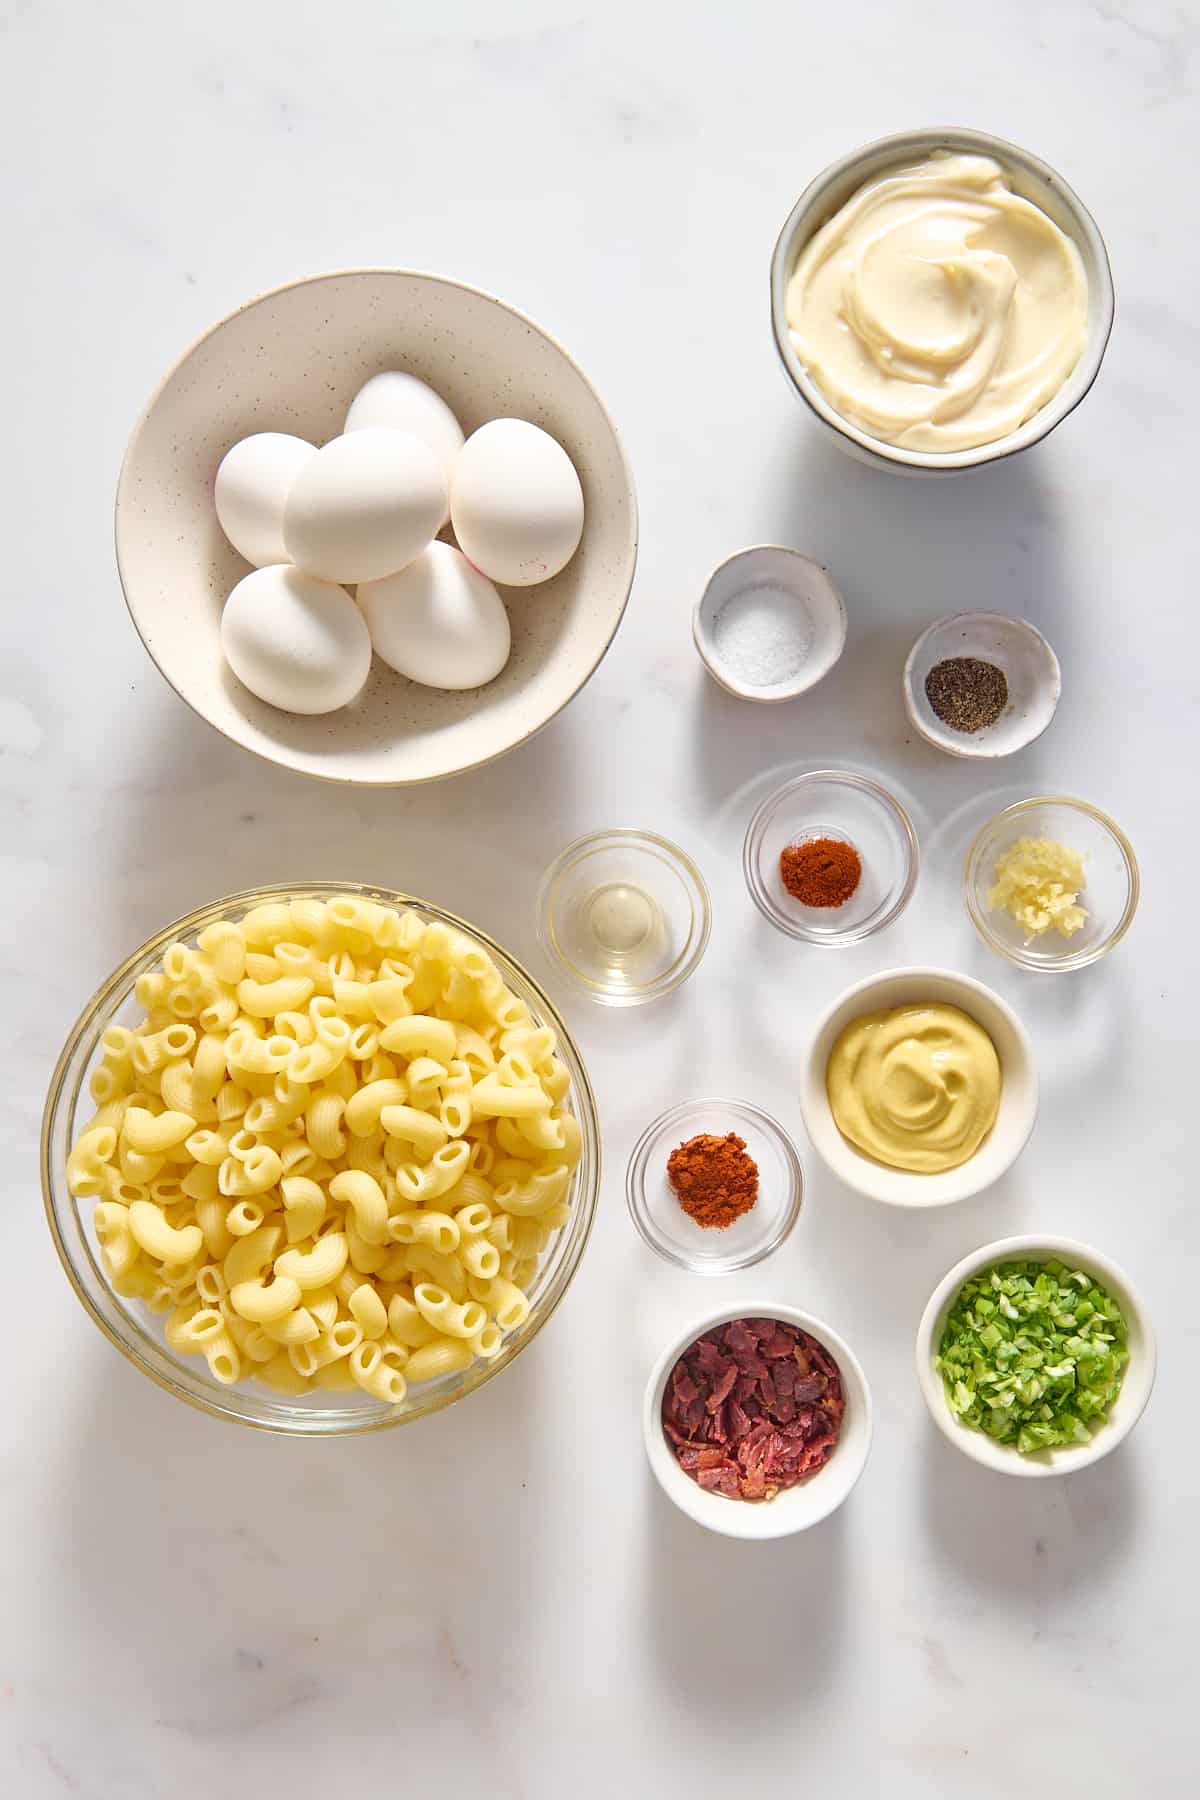 Ingredients to make deviled egg, pasta salad.